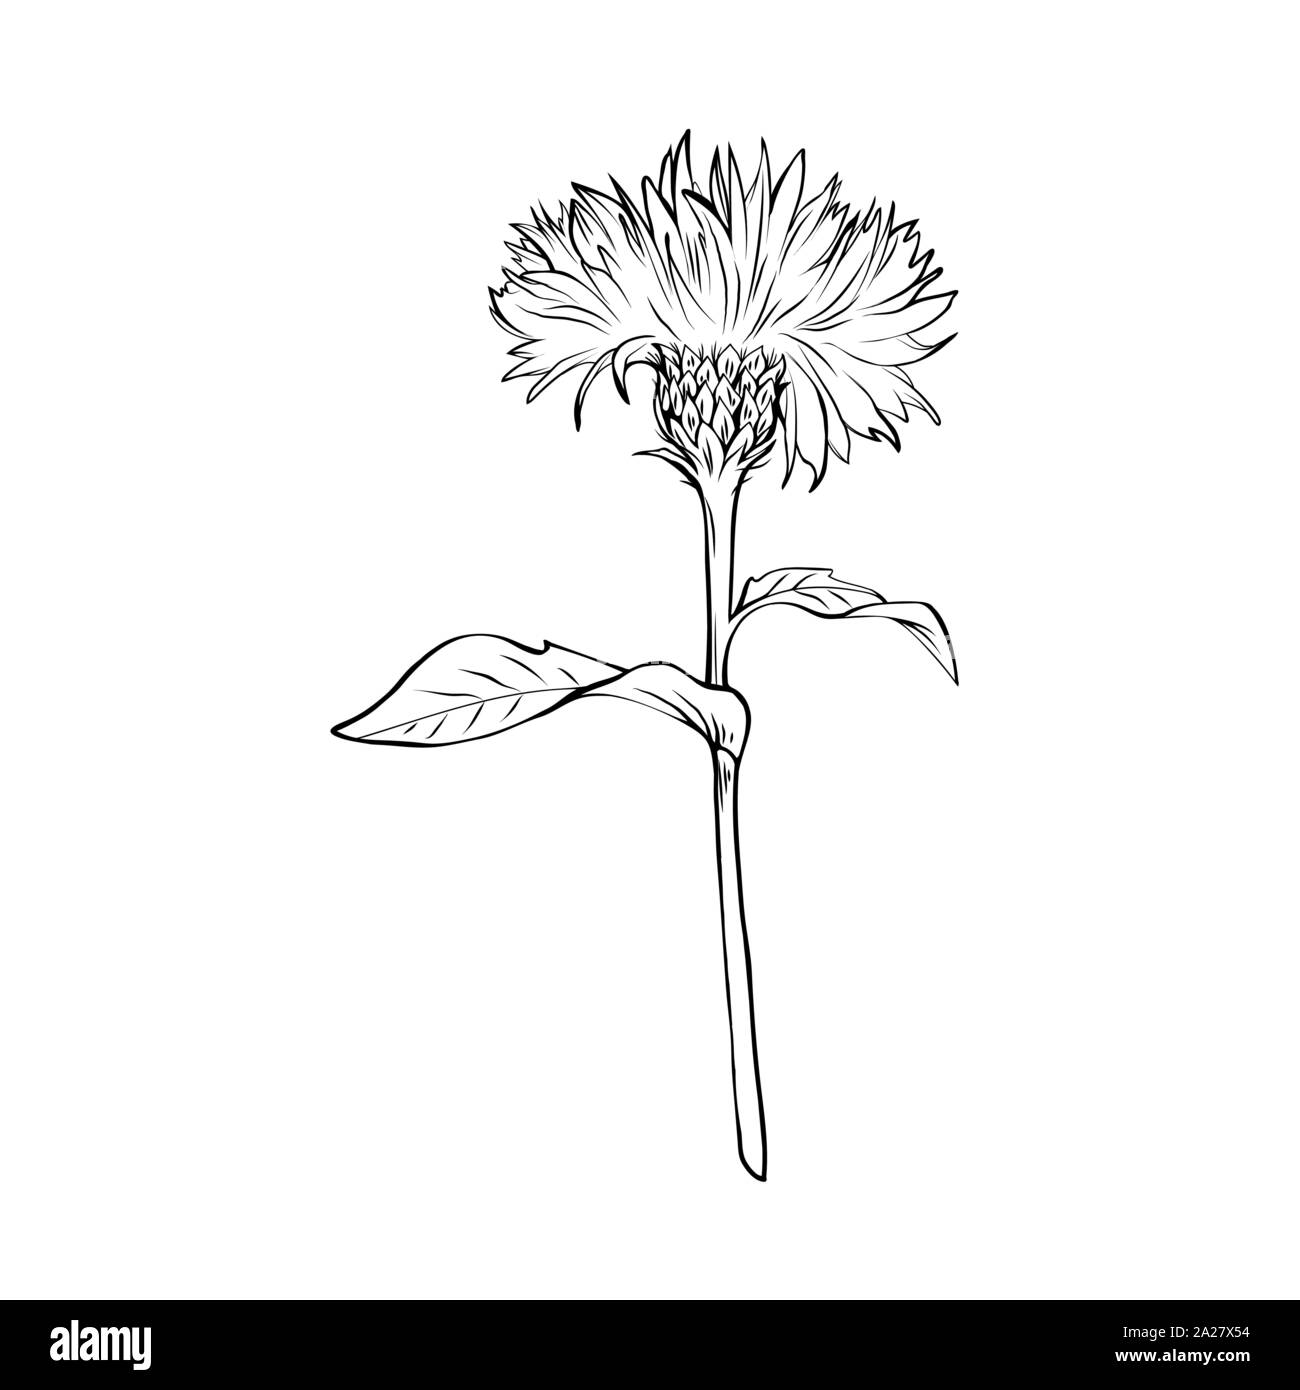 Cardo mariano (Silybum marianum), una planta medicinal con atractivas flores